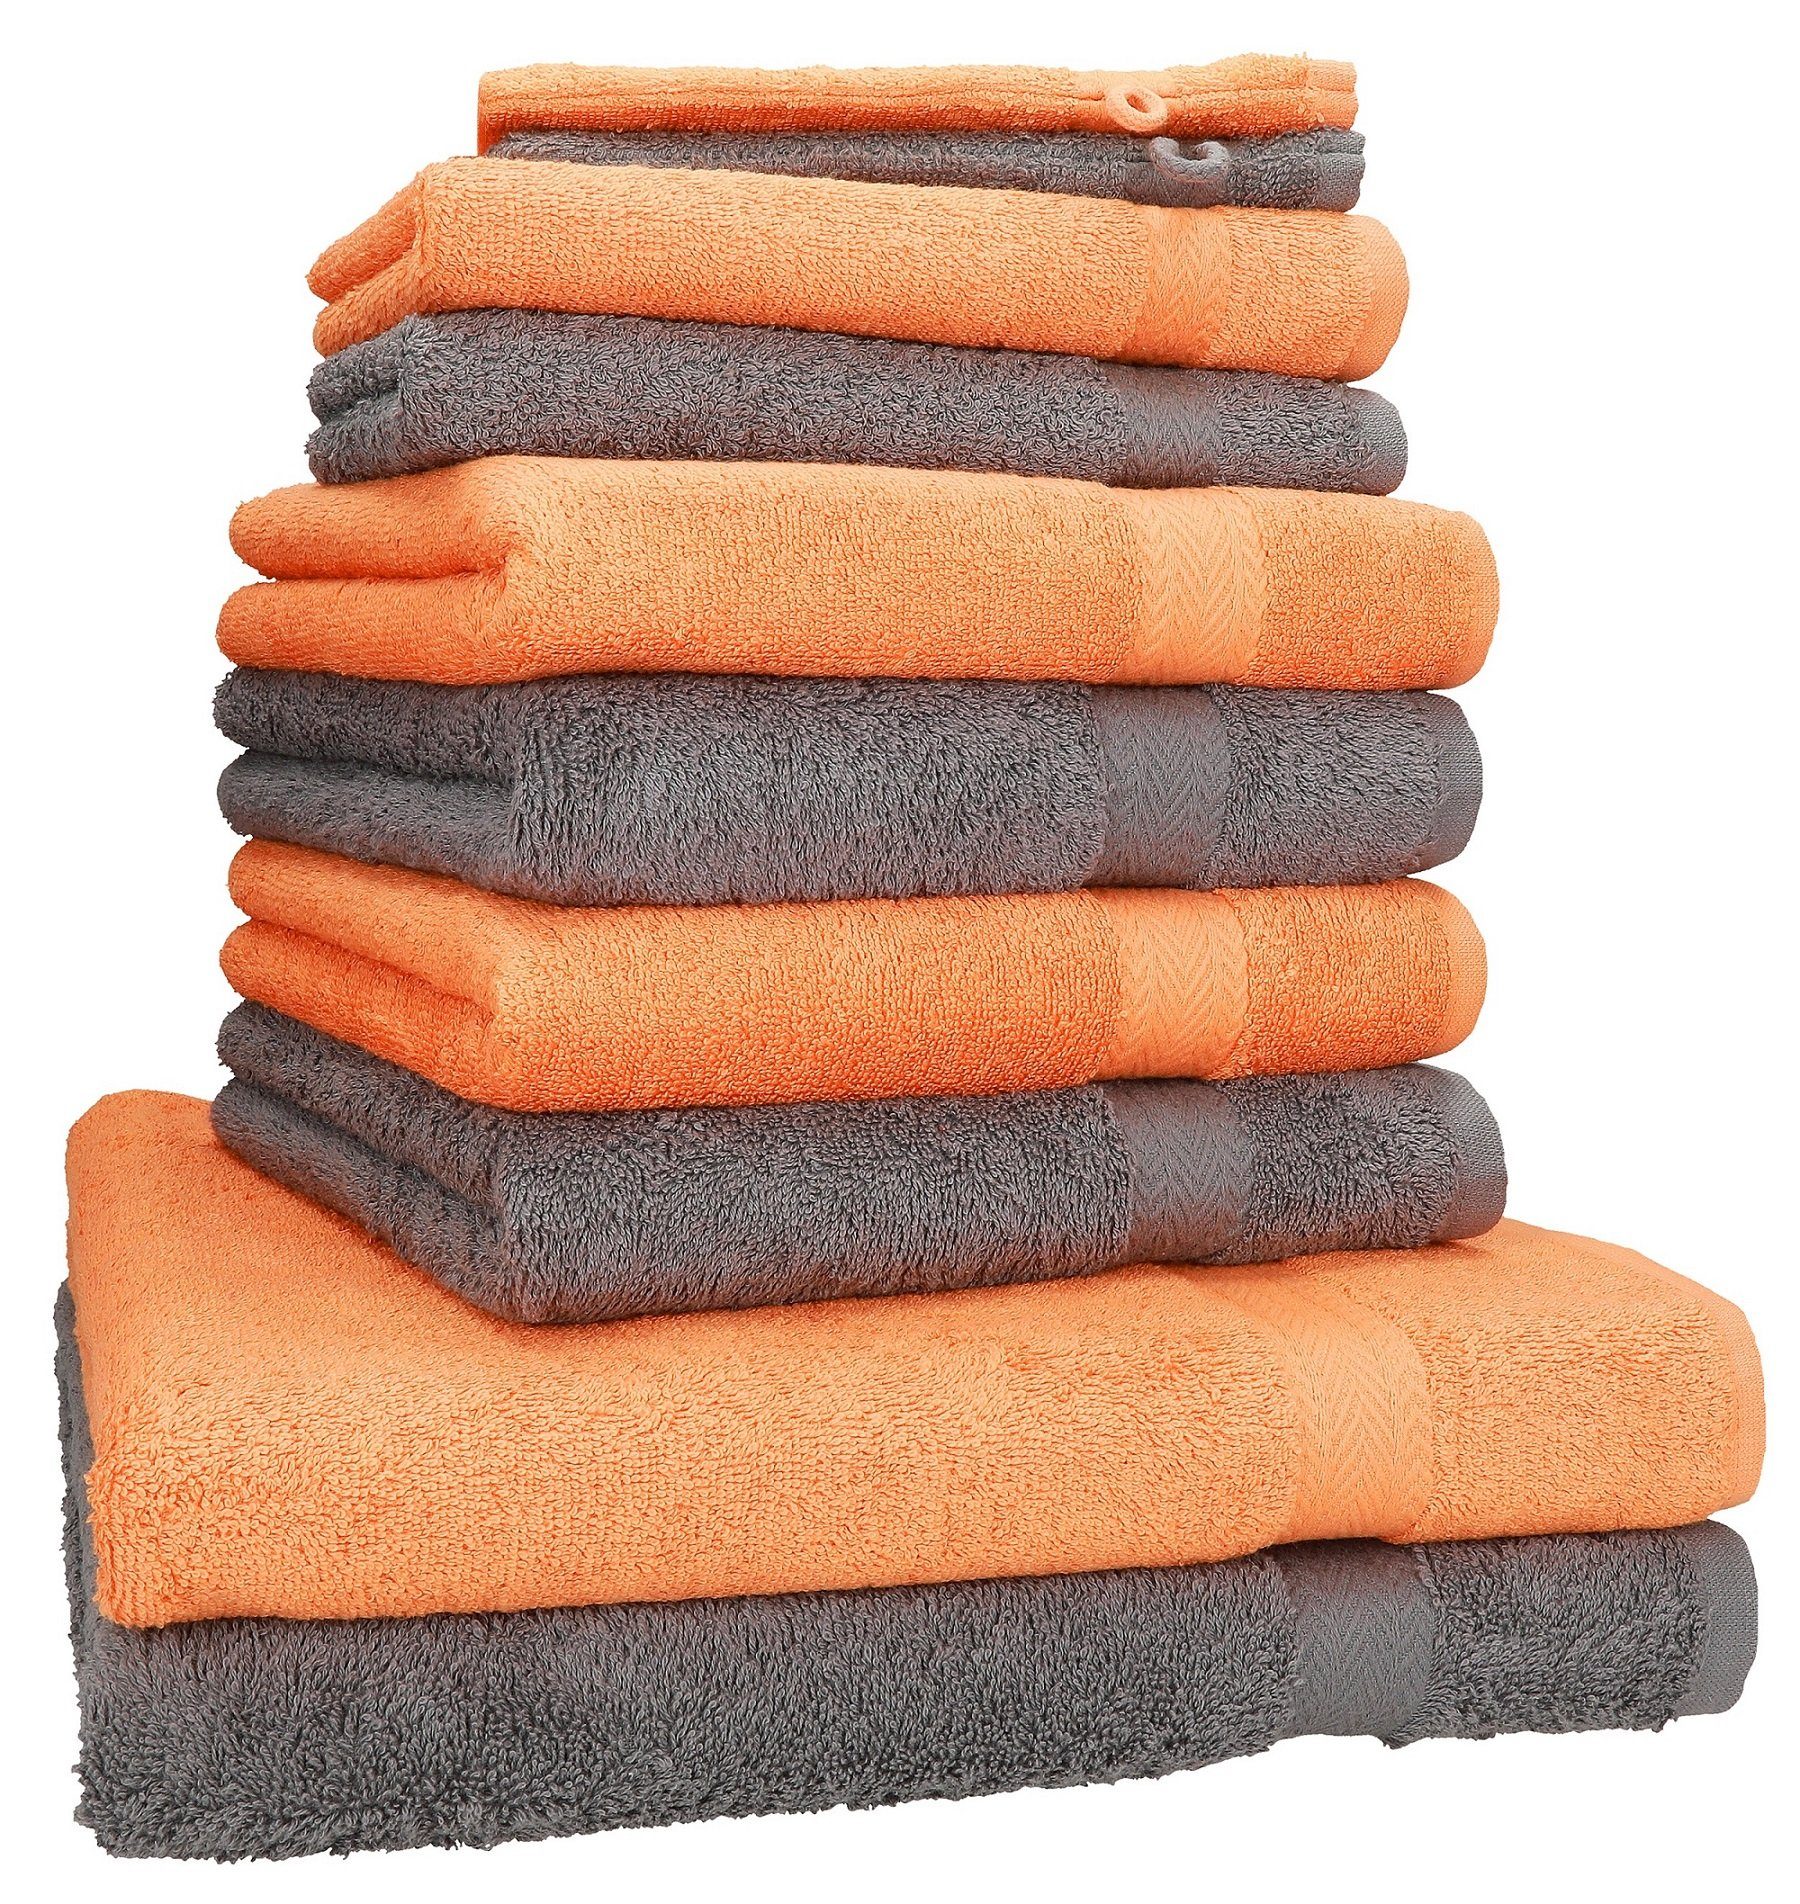 Betz Handtuch Set 10-tlg. Handtuch-Set Premium 100% Baumwolle 2 Duschtücher 4 Handtücher 2 Gästetücher 2 Waschhandschuhe Farbe Orange & Anthrazit, 100% Baumwolle, (10-tlg)